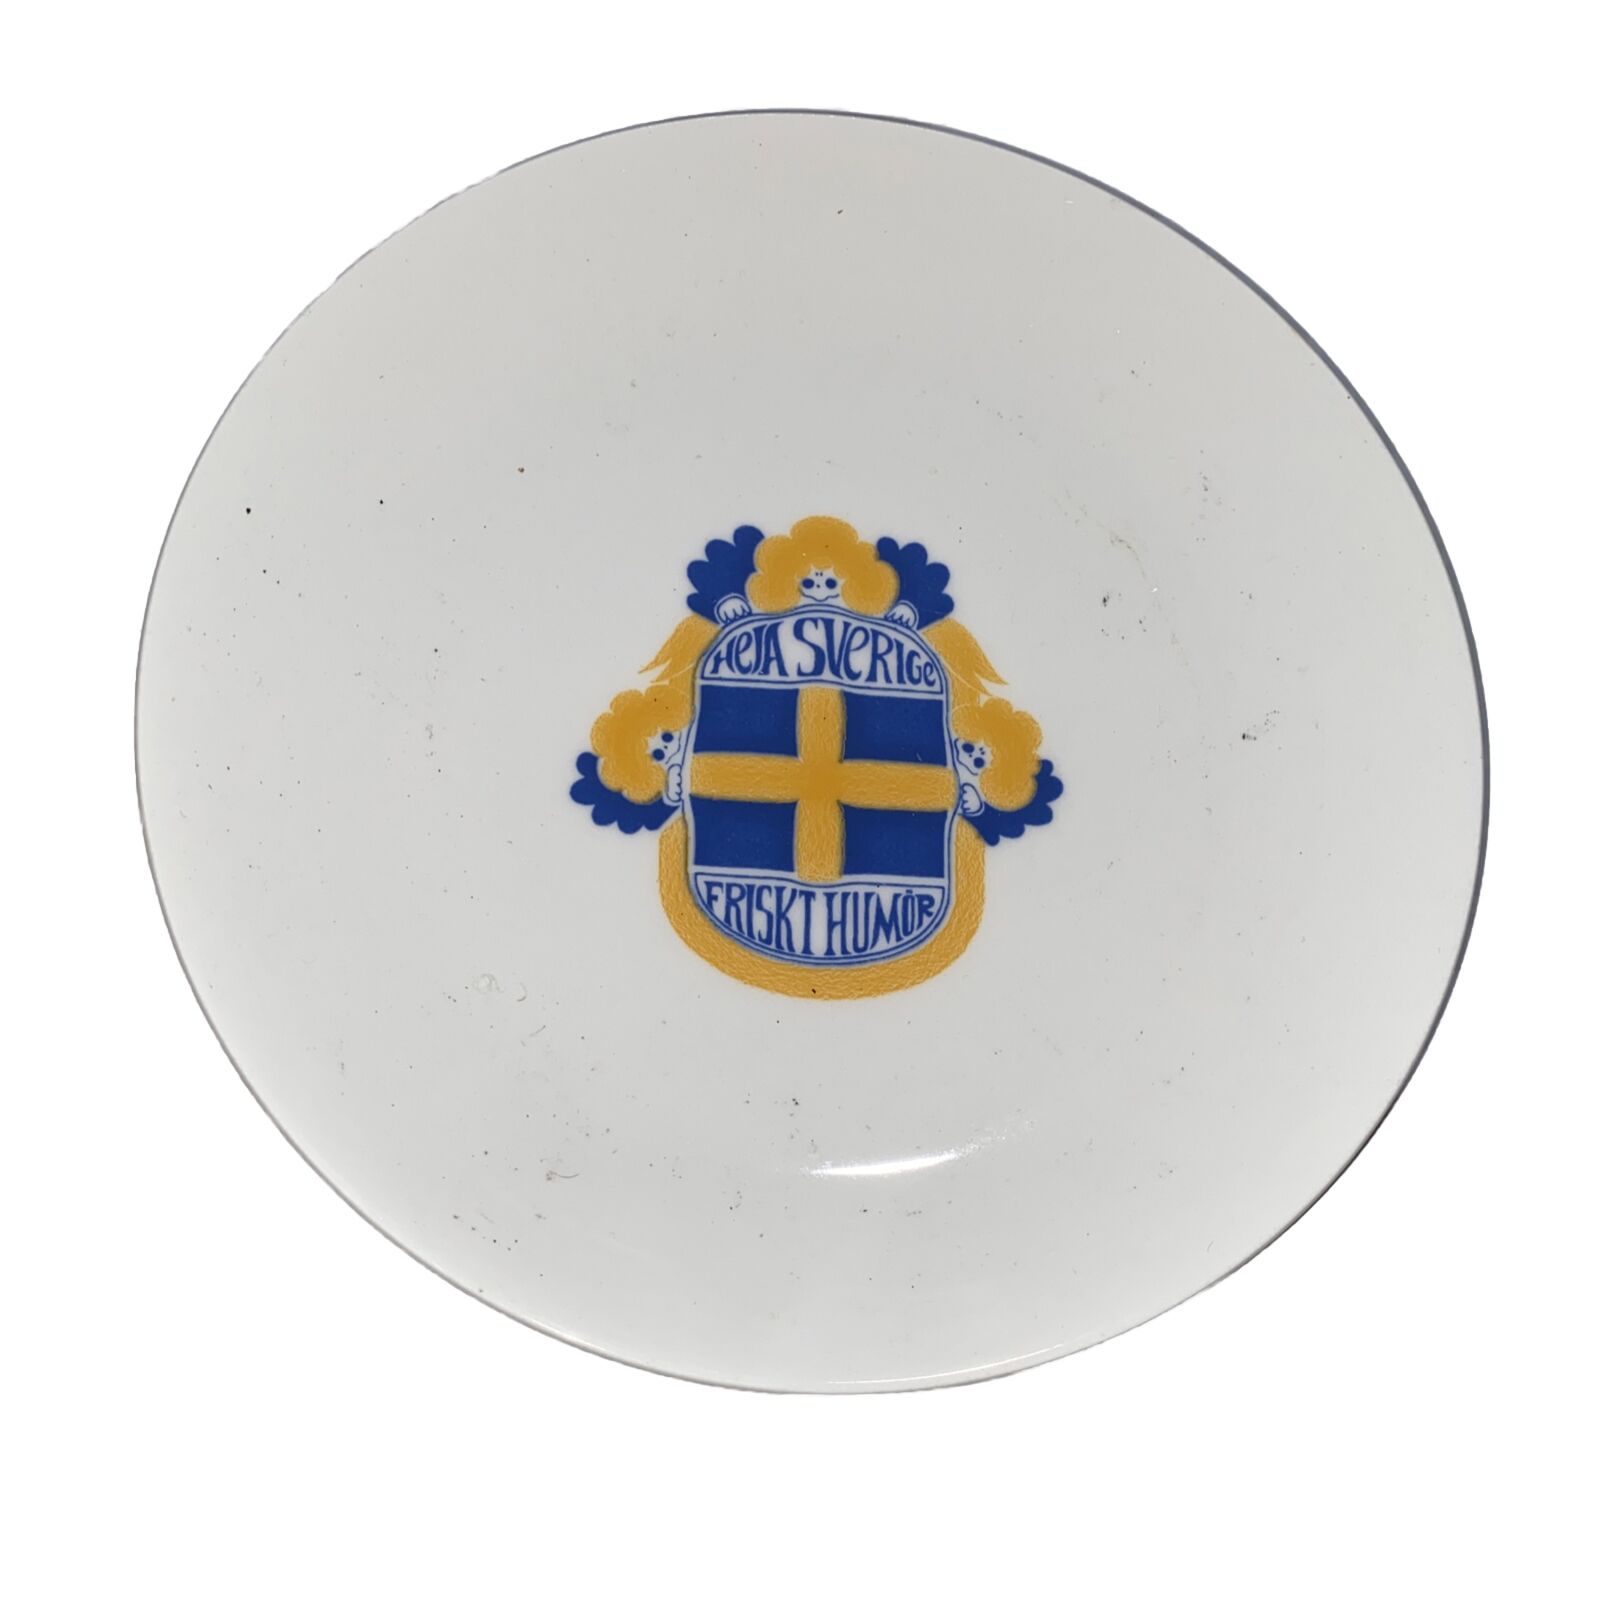 VTG 1960’s Heja Svergie Friskt Humor 8.5” Plate Sweden Scandinavian Ceramic